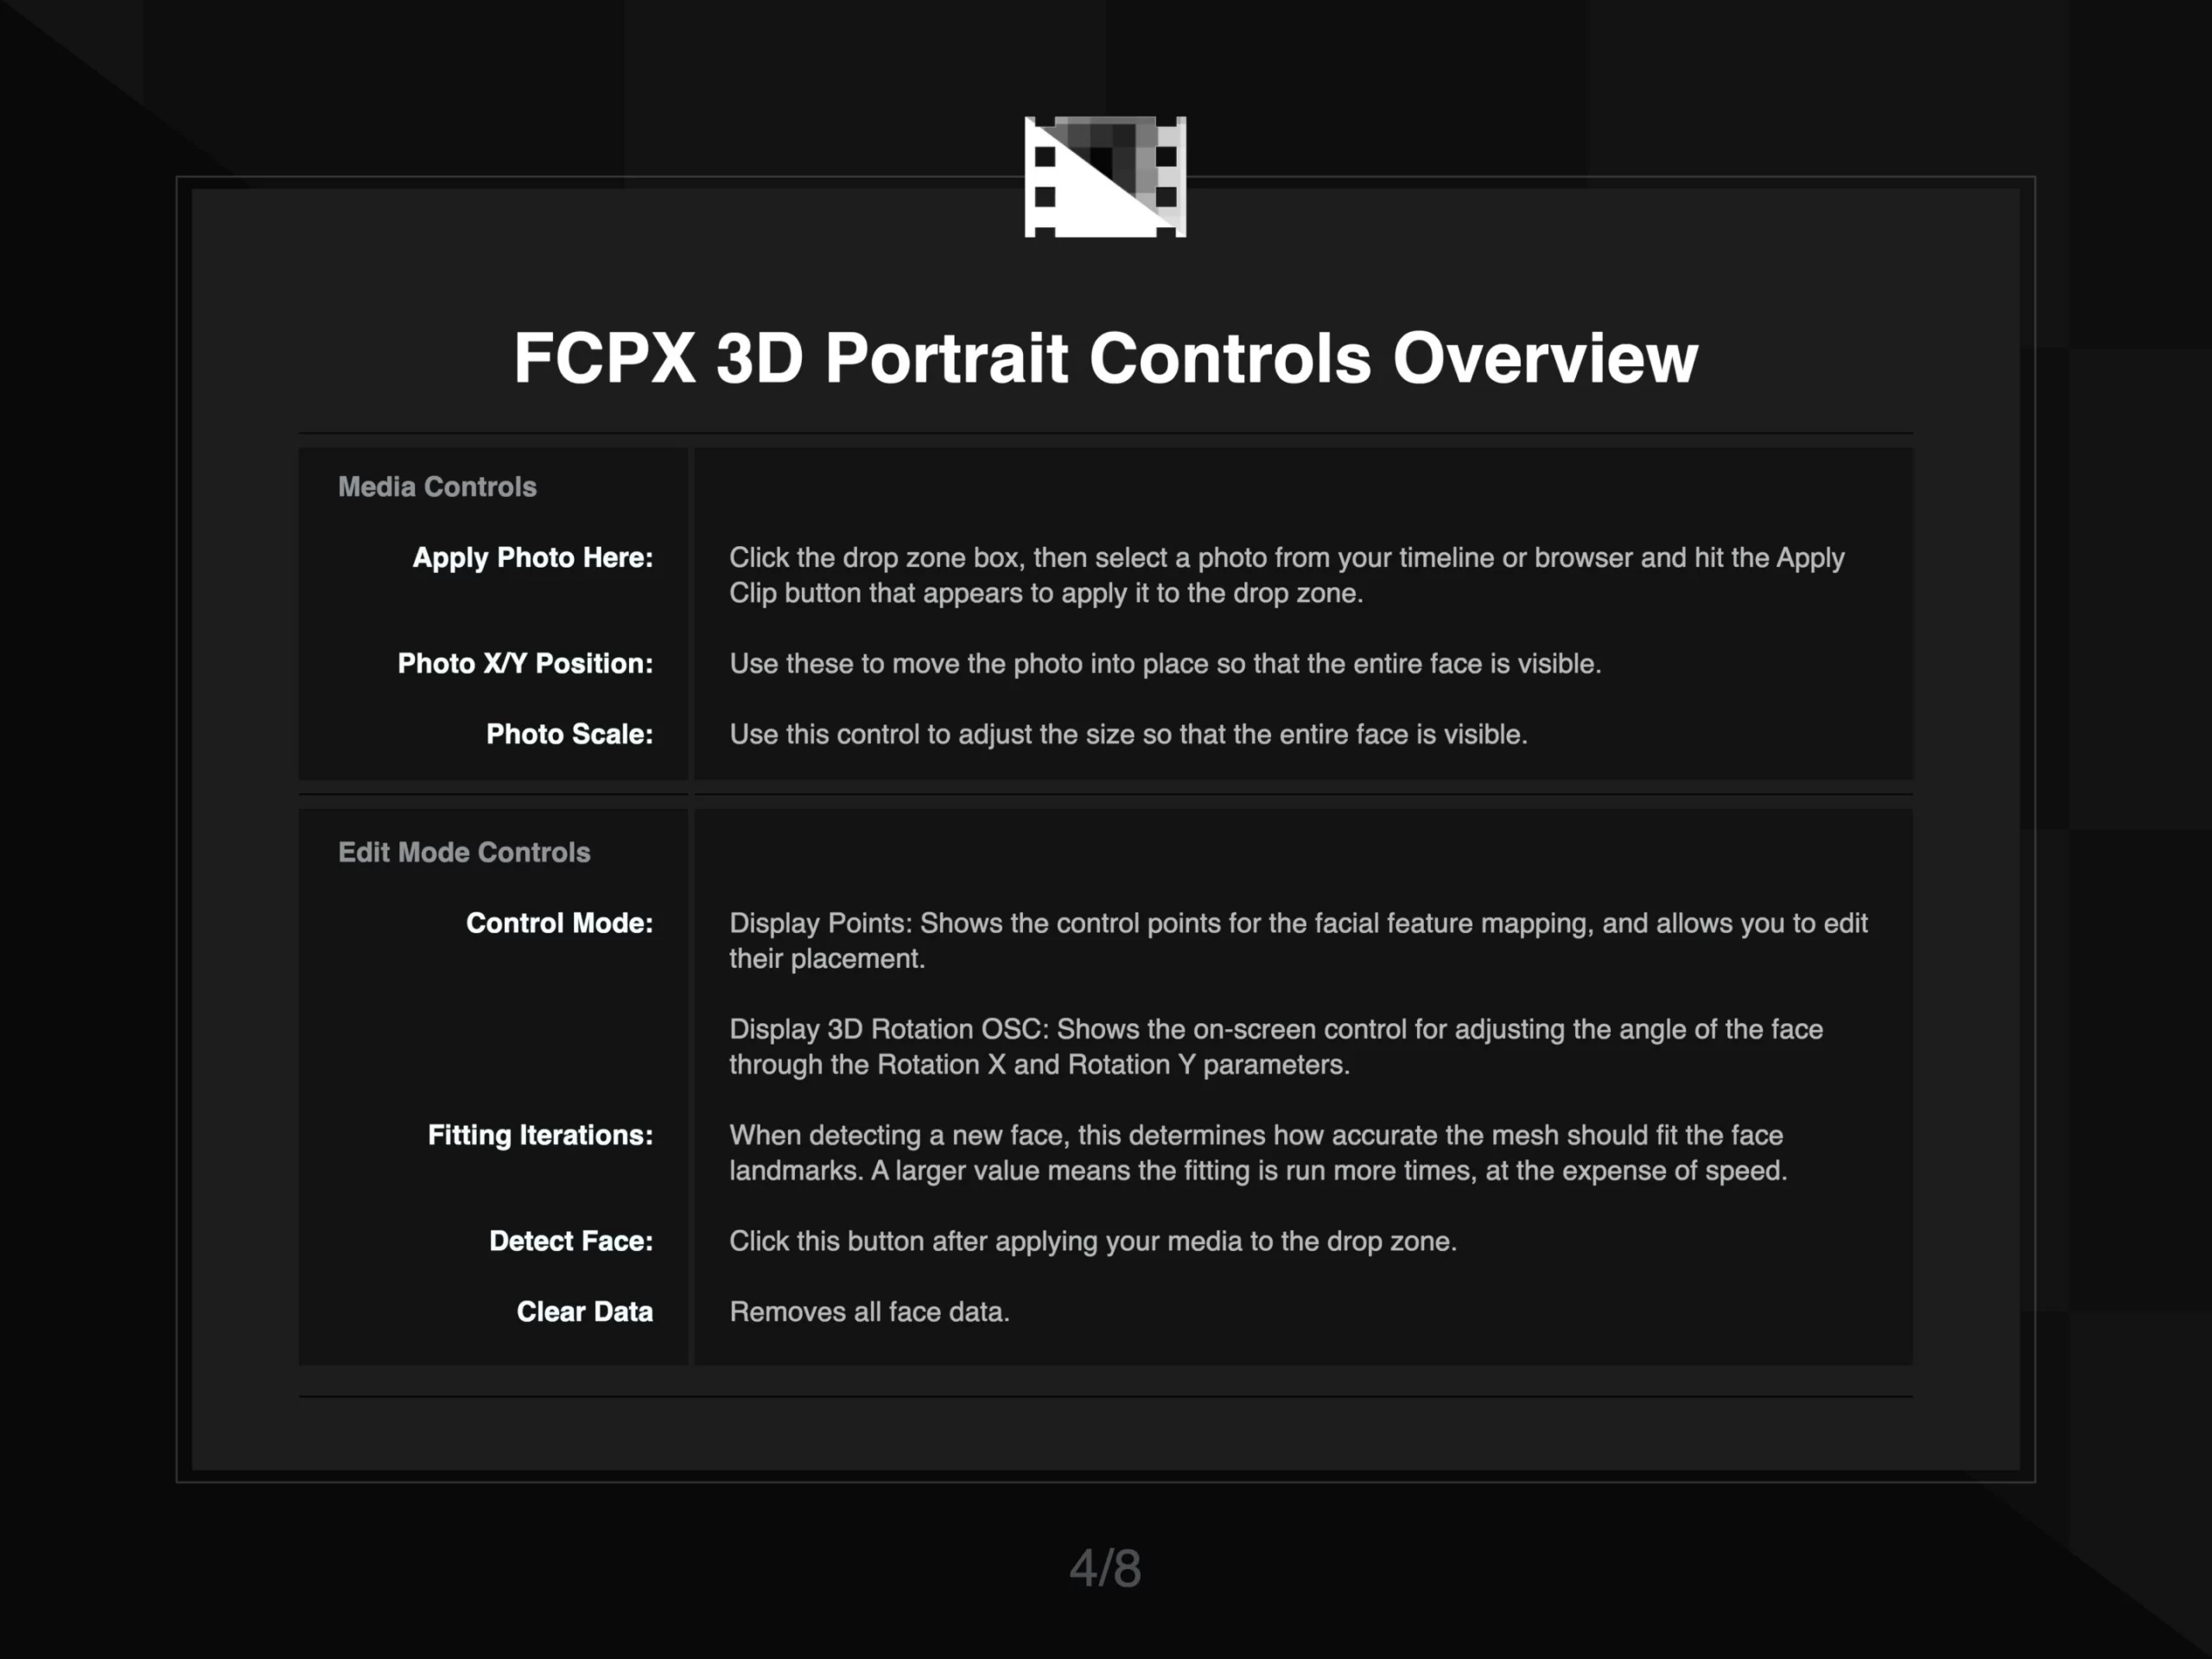 FCPX 3D Portrait Instruction 4 of 8